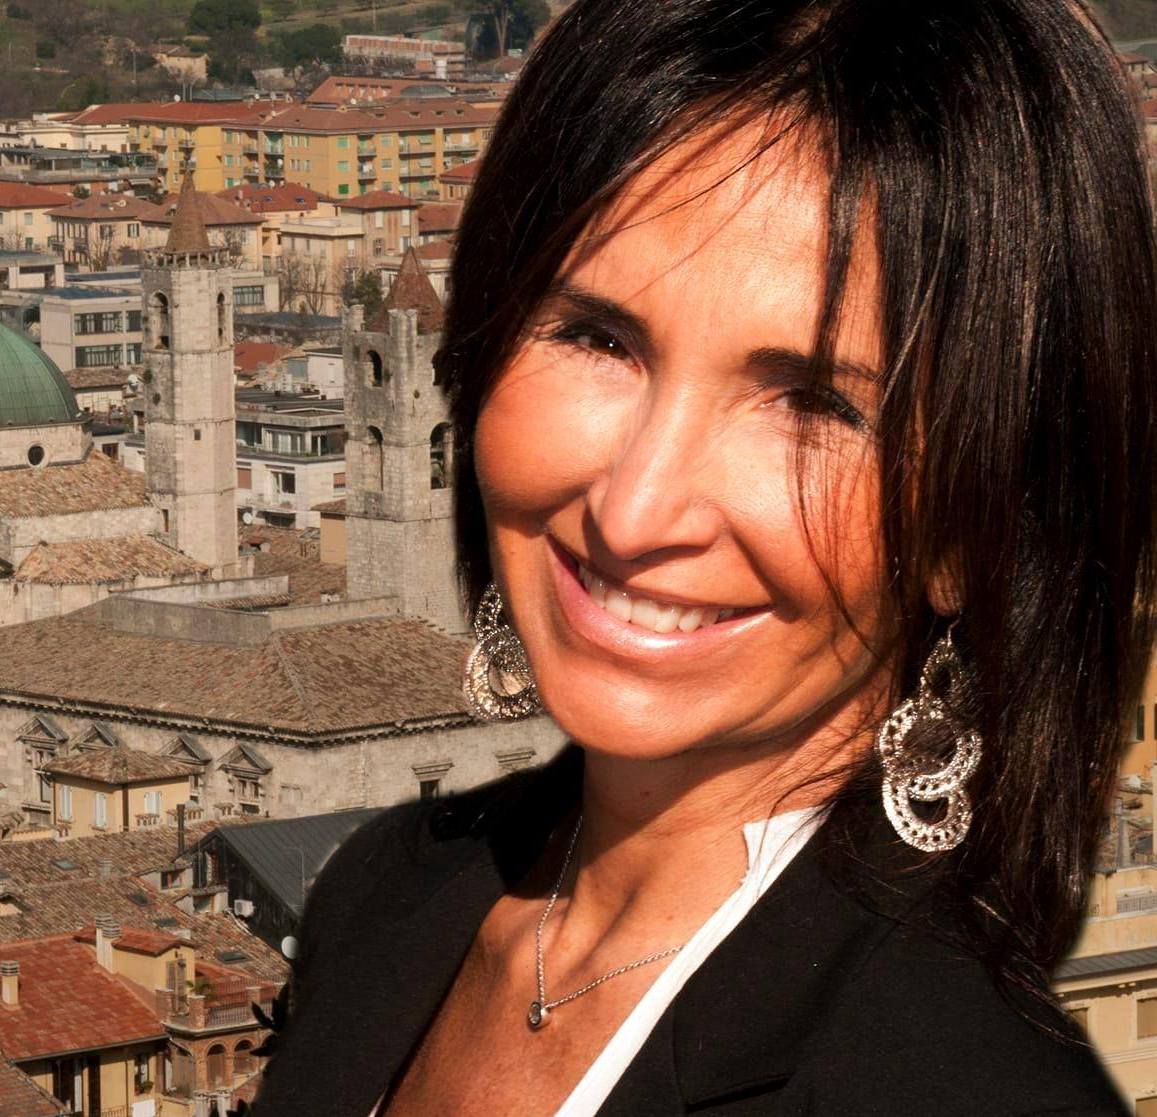 Marche, Battistoni (FI): Donatella Ferretti nuovo capo dipartimento formazione politica FI Marche